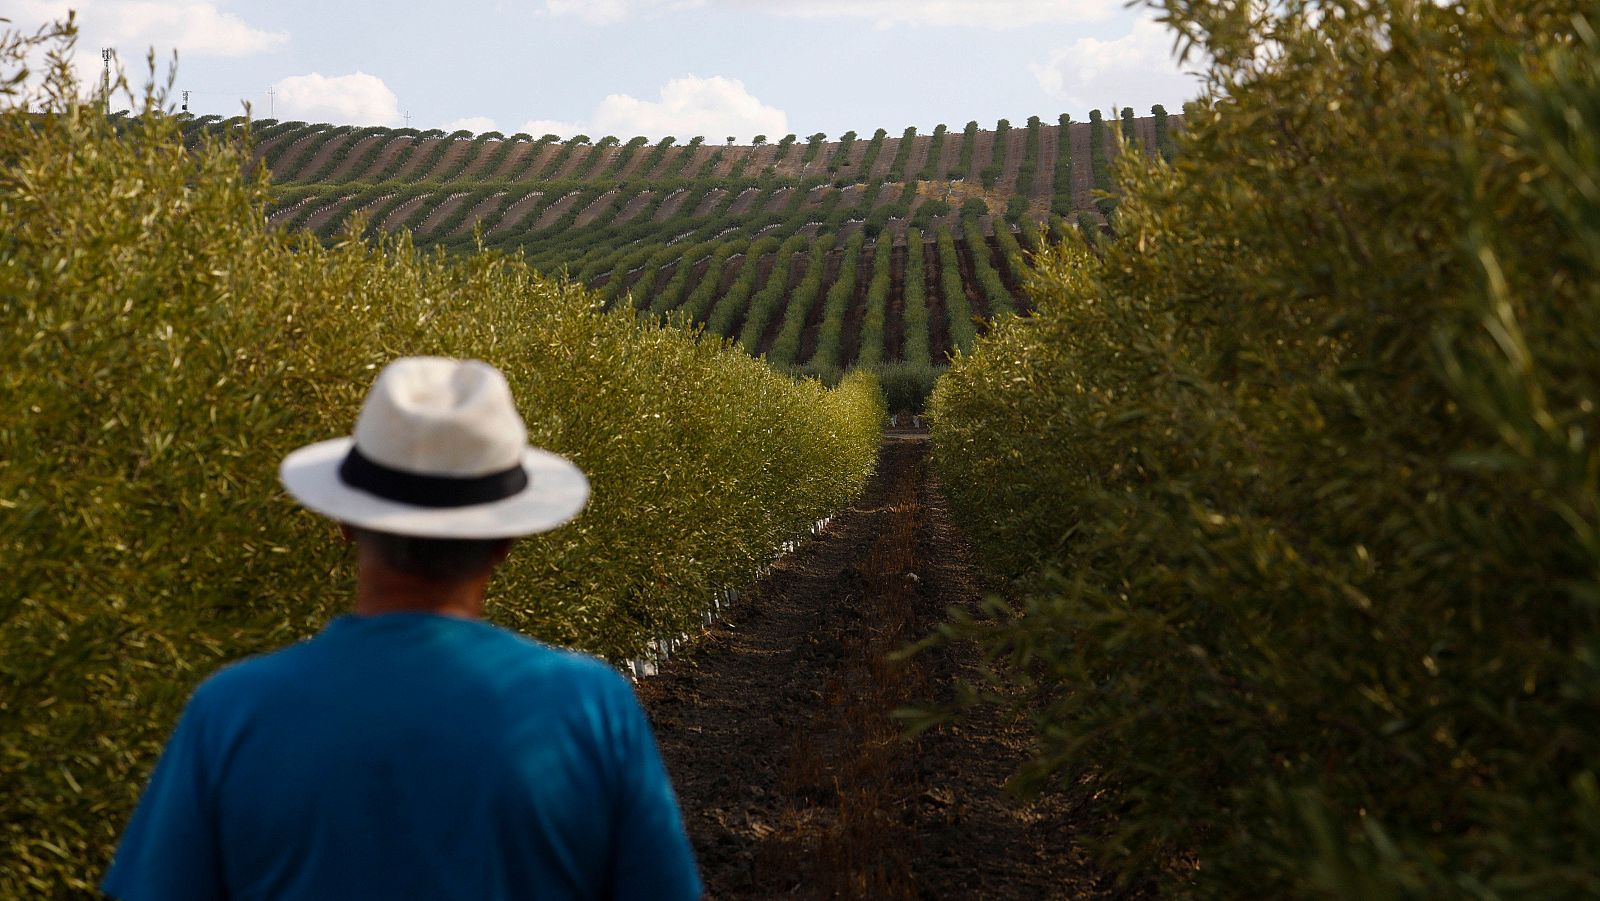 Cultivos tradicionalmente de secano como el olivo se reconvierten cada vez más al regadío